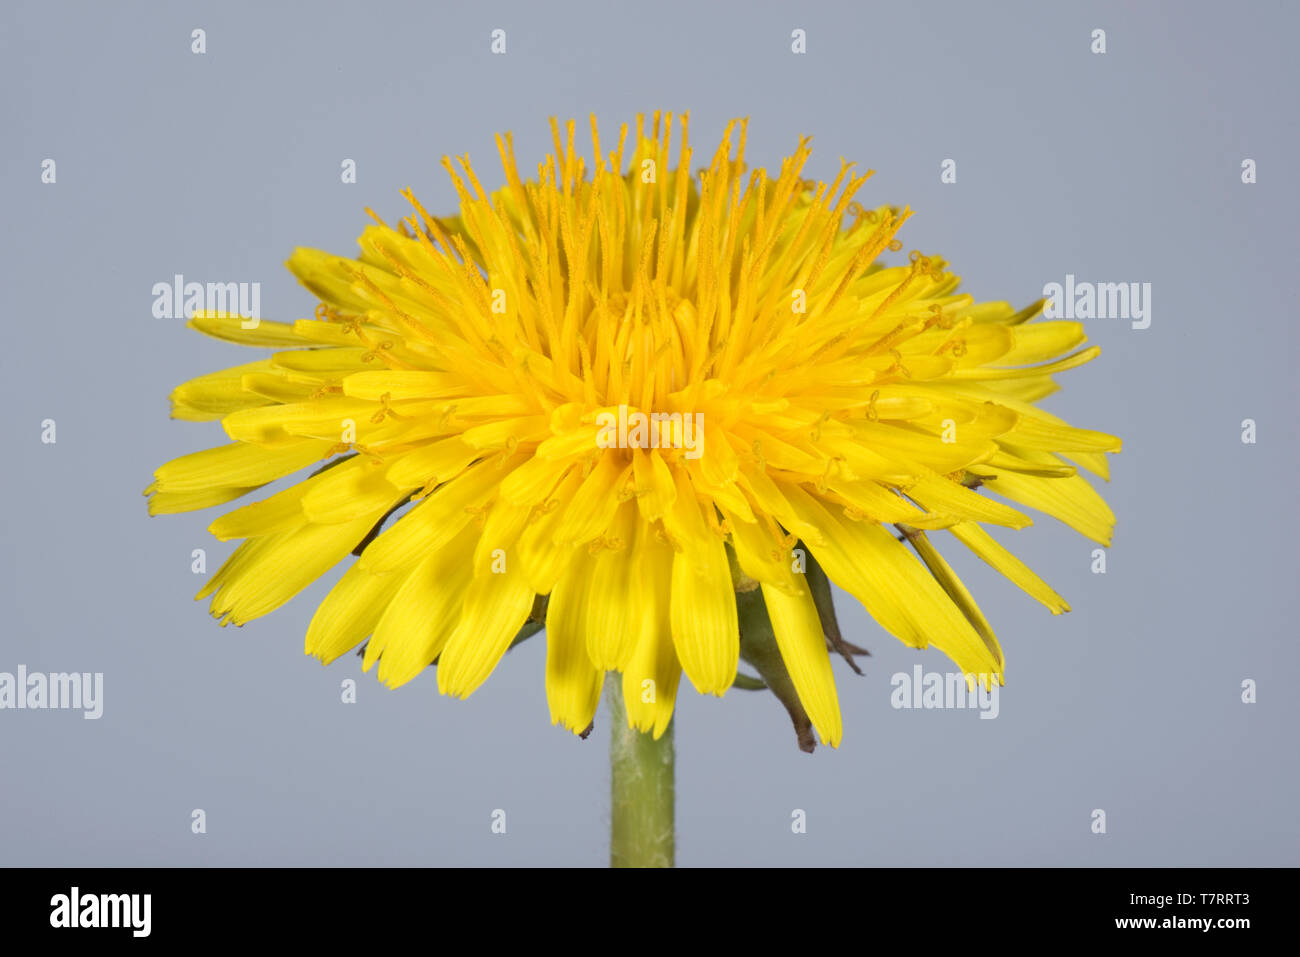 Studio image d'un pissenlit (Taraxacum officinale) fleur jaune pour afficher la structure composite de ray et de fleurons de disque Banque D'Images